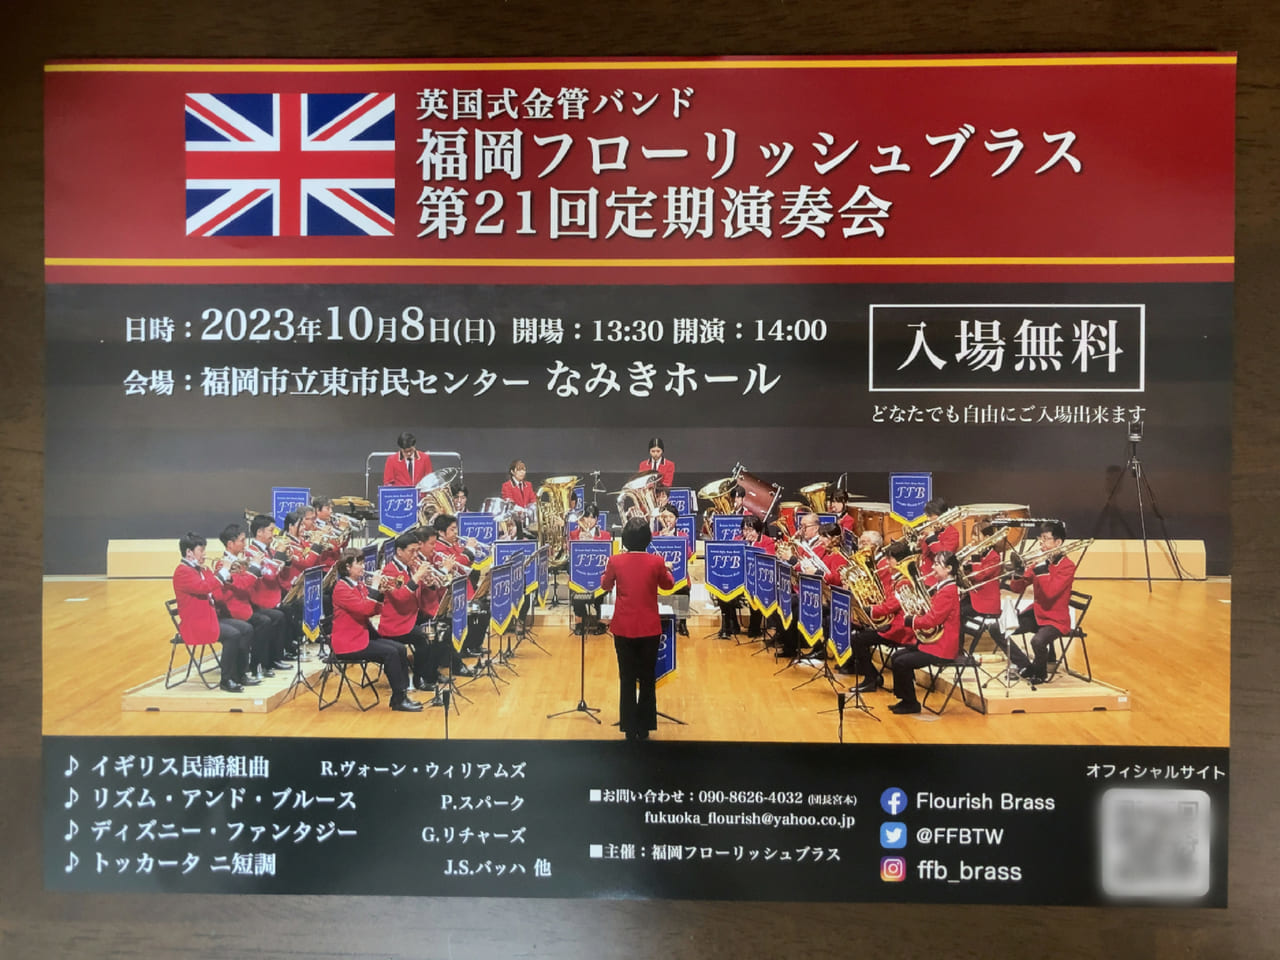 2023年10月8日(日)、英国式金管バンド「福岡フローリッシュブラス第21回定期演奏会」が、なみきスクエア内の「なみきホール」で開催されます。